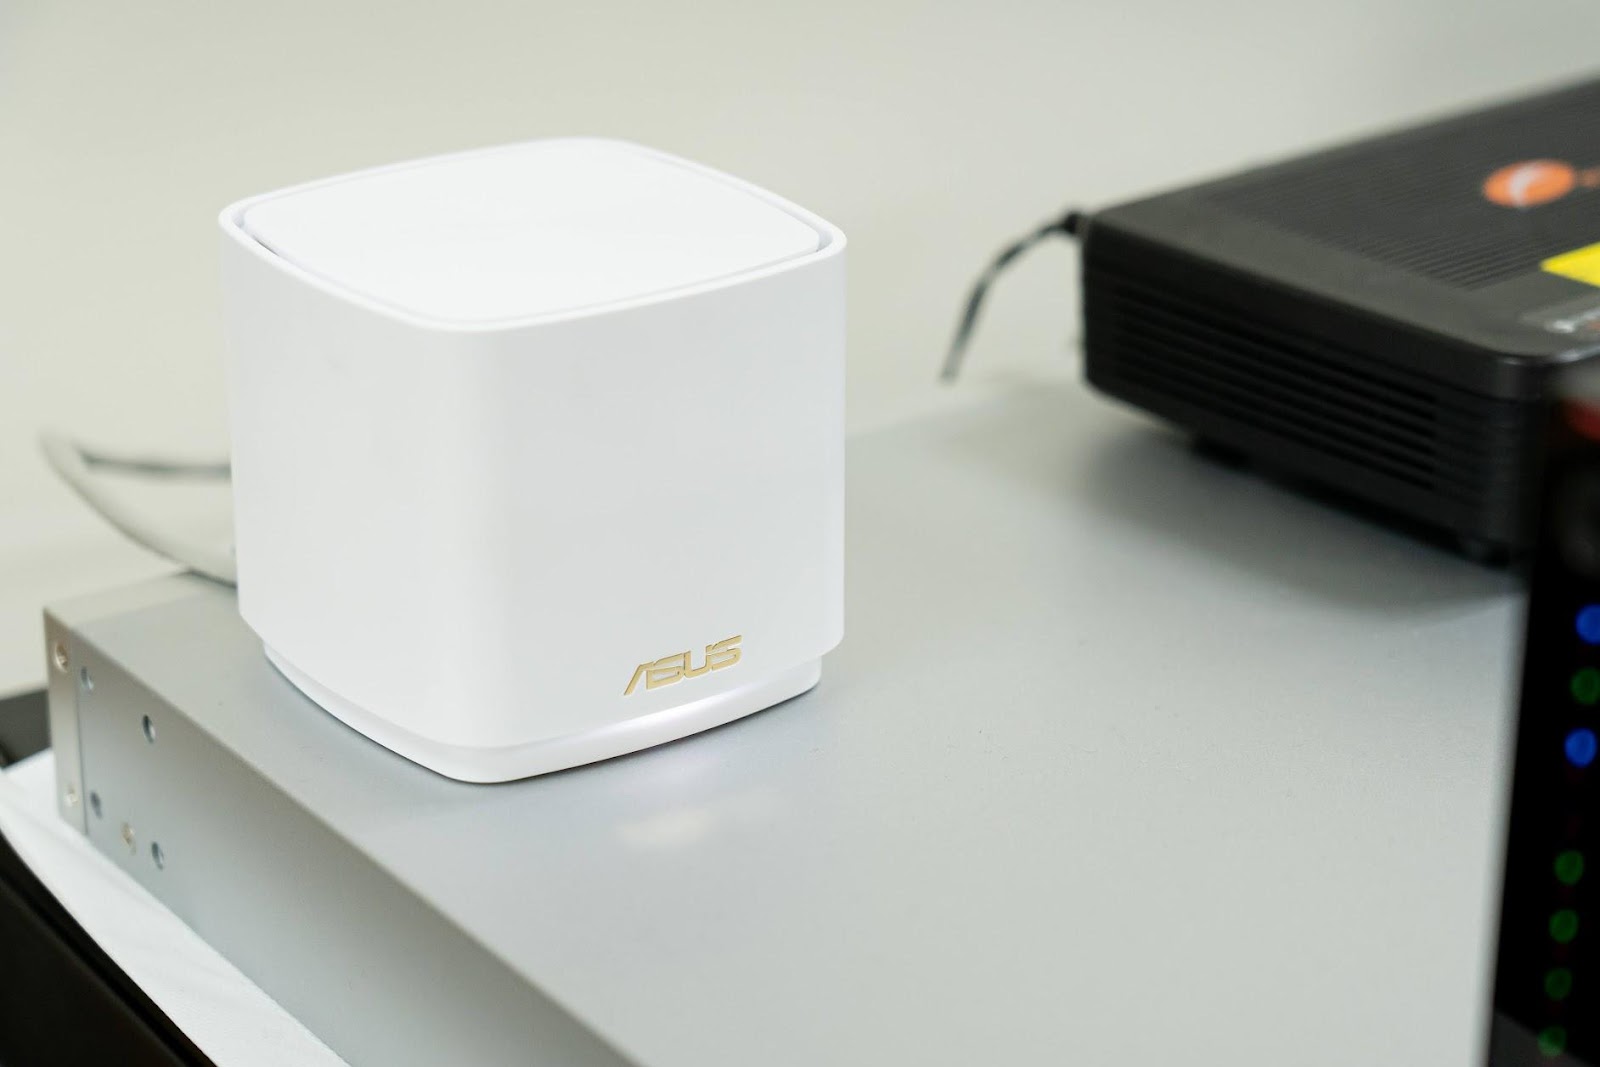 簡易設定 Wi-Fi 6 Mesh 平價解決方案 ZenWiFi AX Mini 開箱實測｜AX1800、ASUS Router、無線基地台、AP 模式｜科技狗 - ASUS, AX, Wi-Fi6, ZenWiFi, 無線分享器, 無線基地台, 無線網路, 路由器 - 科技狗 3C DOG